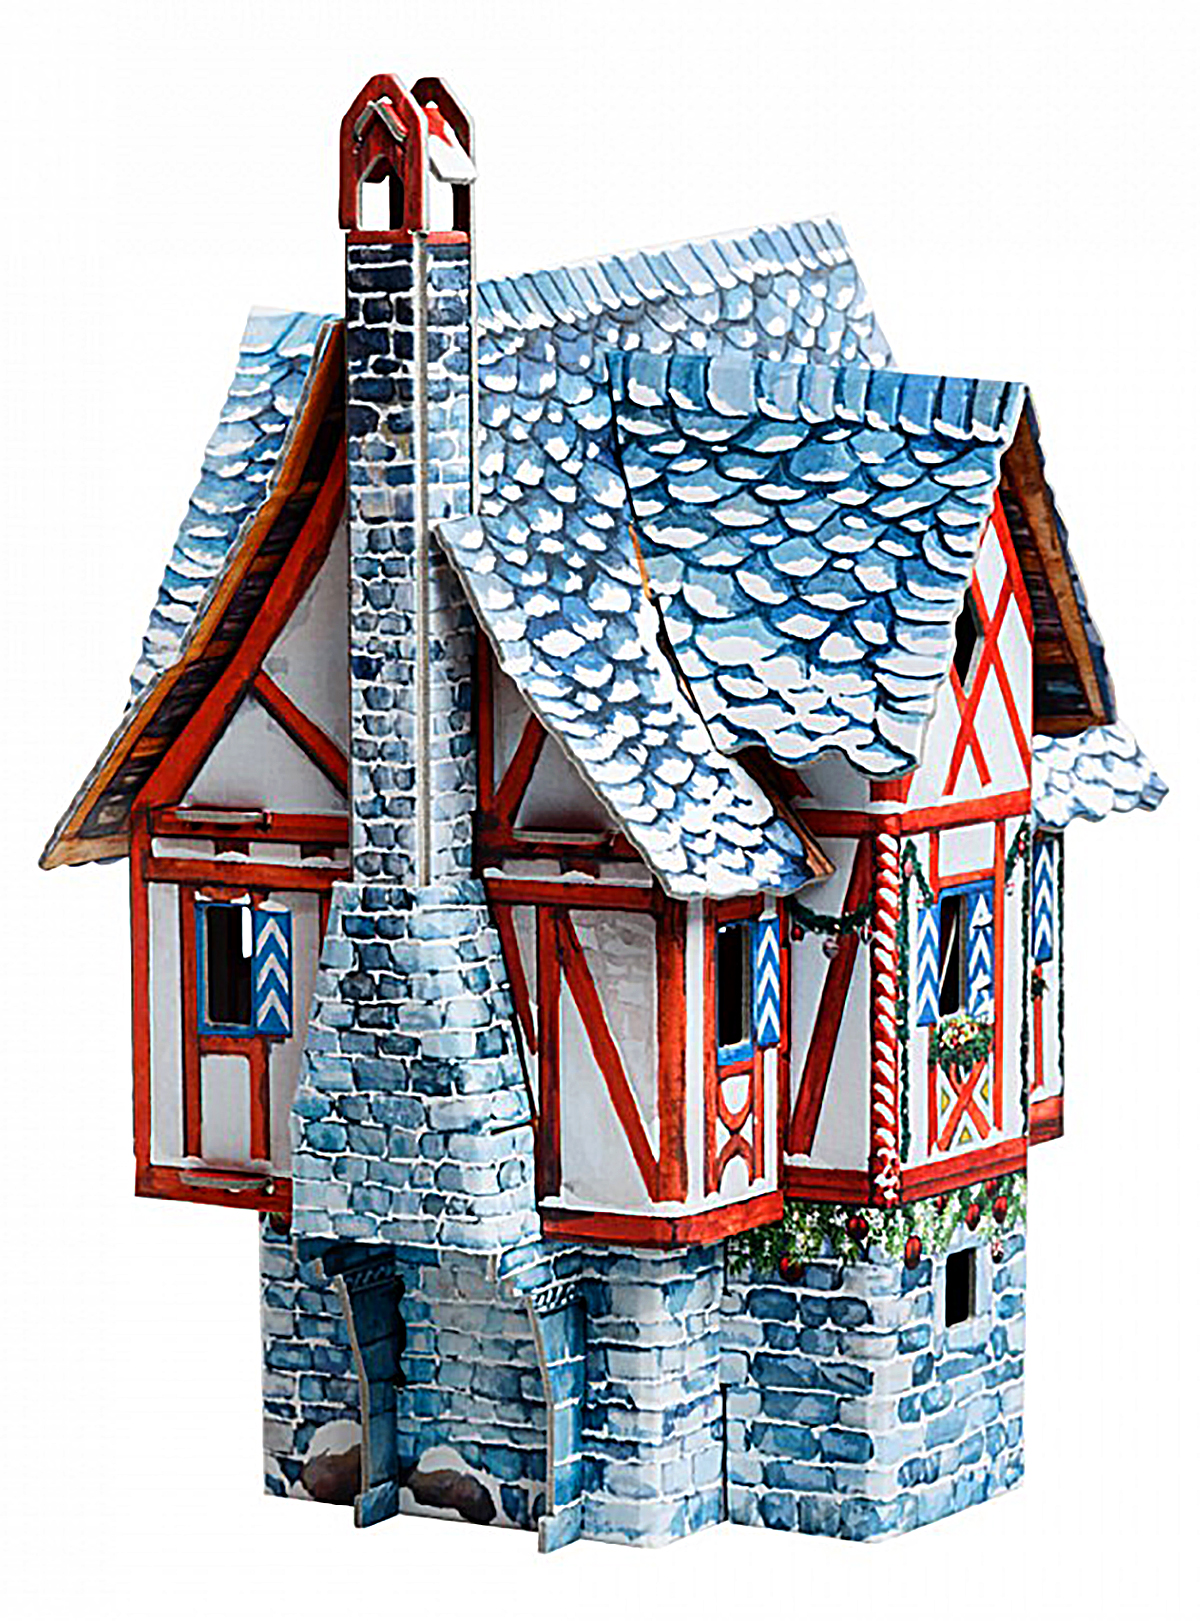 3D Puzzle KARTONMODELLBAU Modell Geschenk Idee Spielzeug Kaufmannshaus Winter